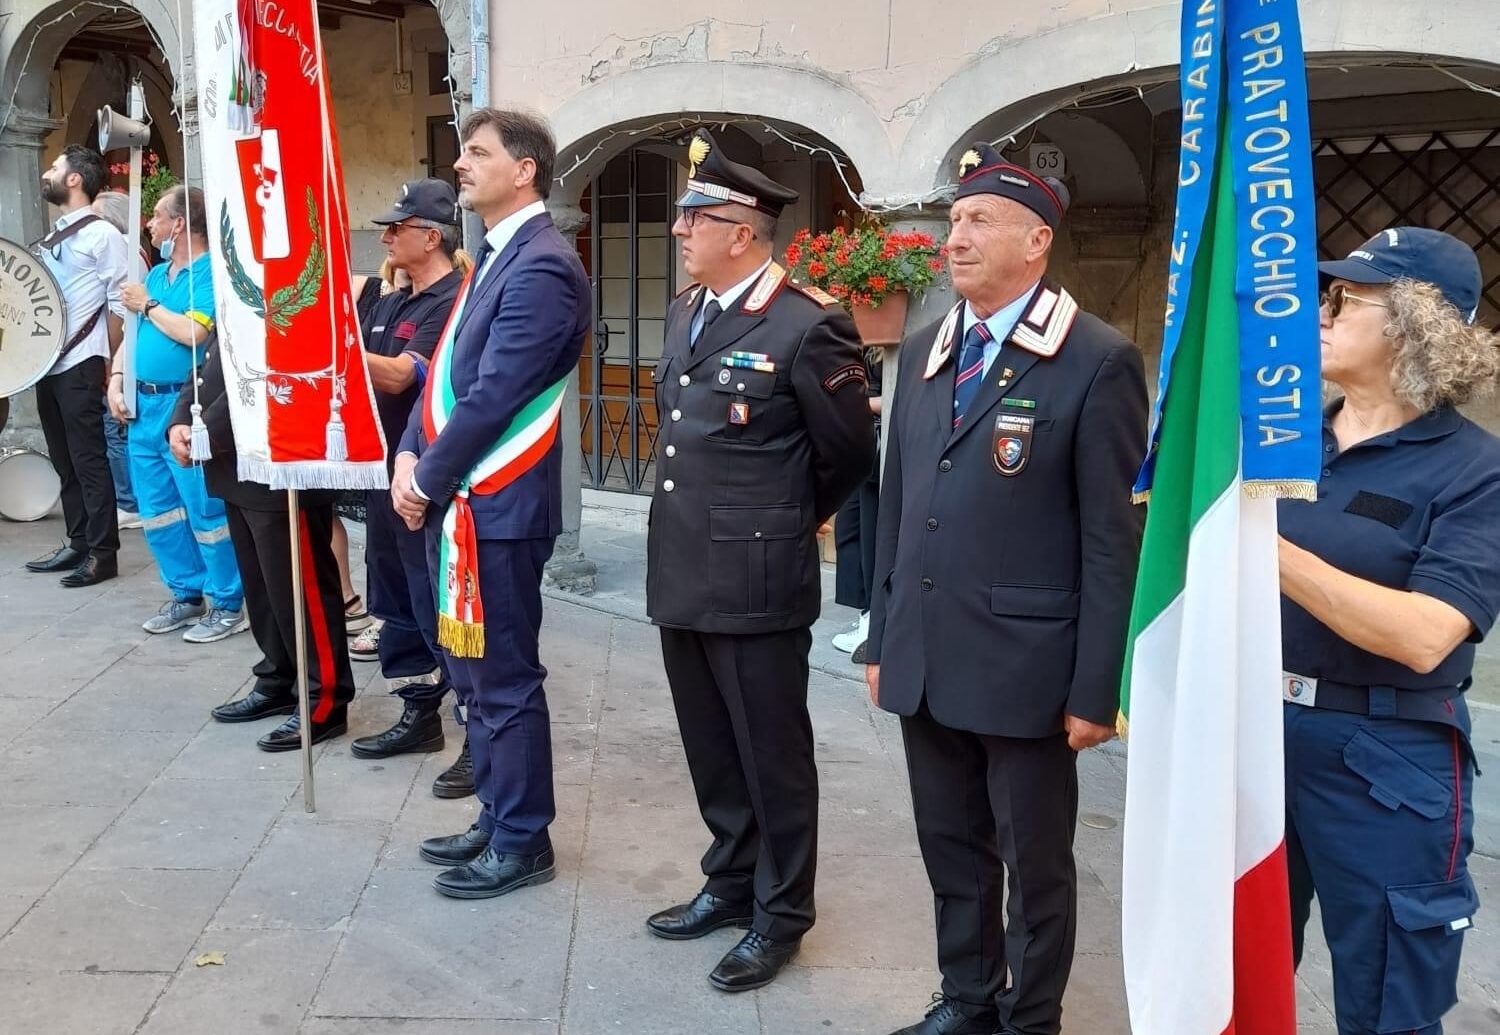 Associazione Nazionale Carabinieri, una ricchezza per il territorio di Pratovecchio Stia: tanti i servizi garantiti